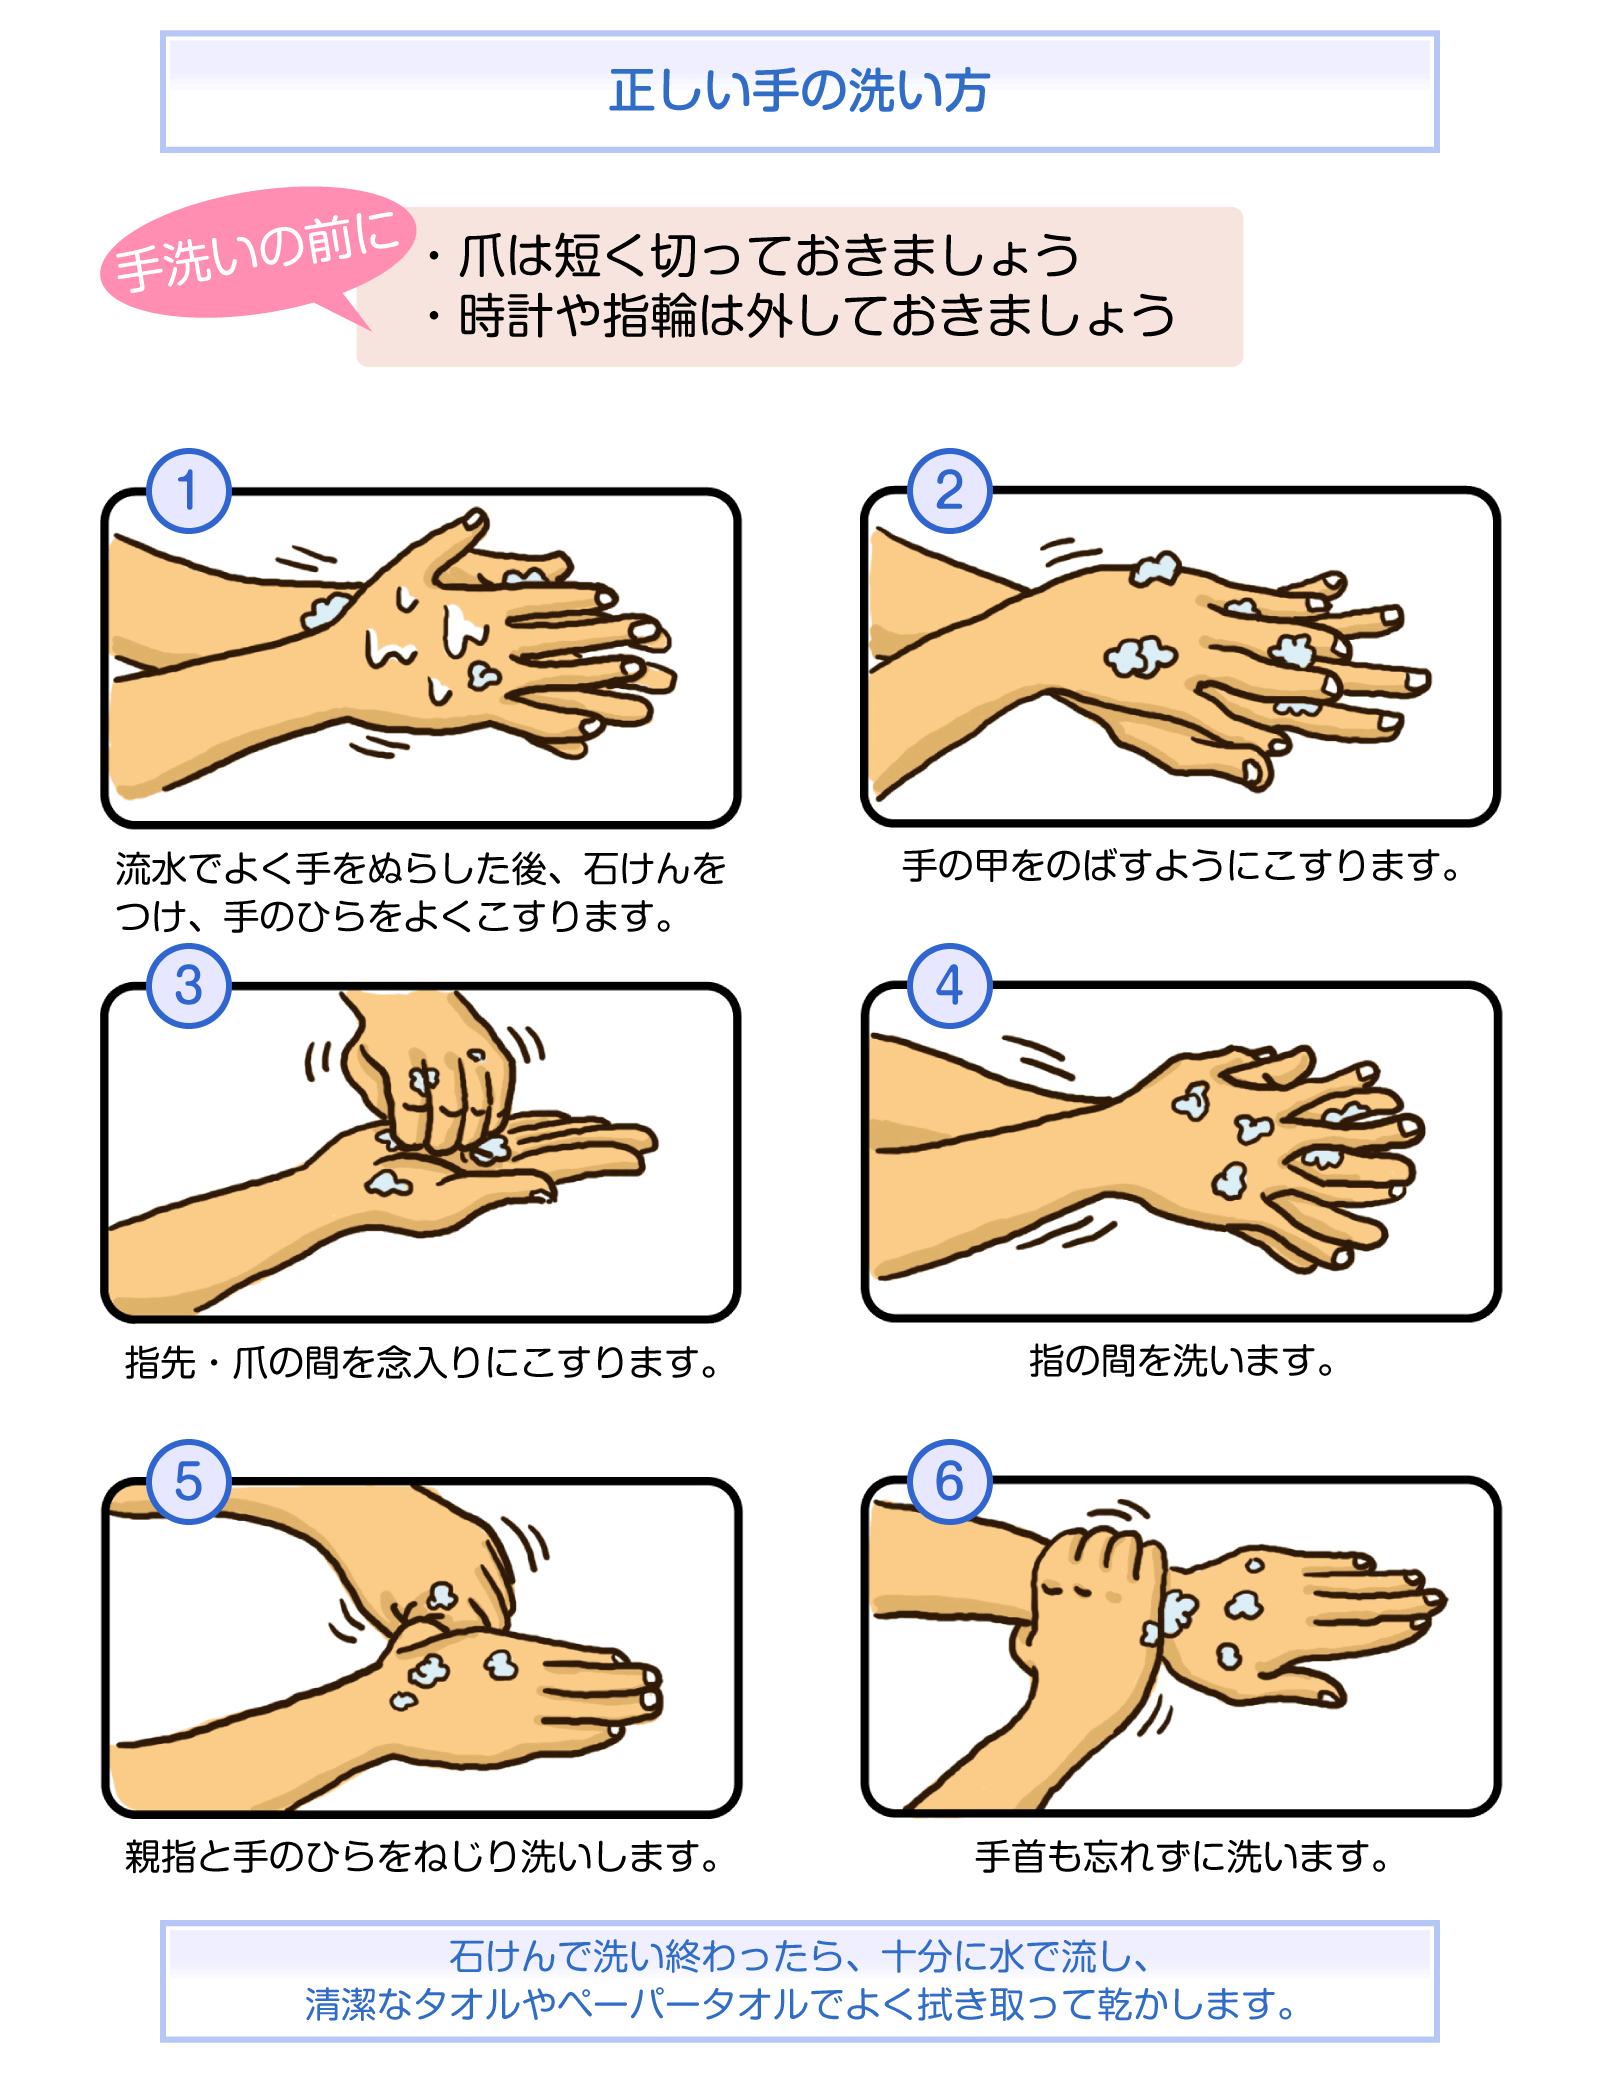 イラスト：正しい手の洗い方。手洗いの前に爪は短く切っておく。時計や指輪は外しておく。①流水でよく手を濡らした後、石けんをつけ、手のひらをよくこすります。②手の甲を伸ばすようにこすります。③指先・爪の間を念入りにこすります。④指の間を洗います。⑤親指と手のひらをねじり洗いします。⑥手首も忘れずに洗います。石けんで洗い終わったら、十分に水で流し、清潔なタオルやペーパータオルでよく拭き取って乾かします。